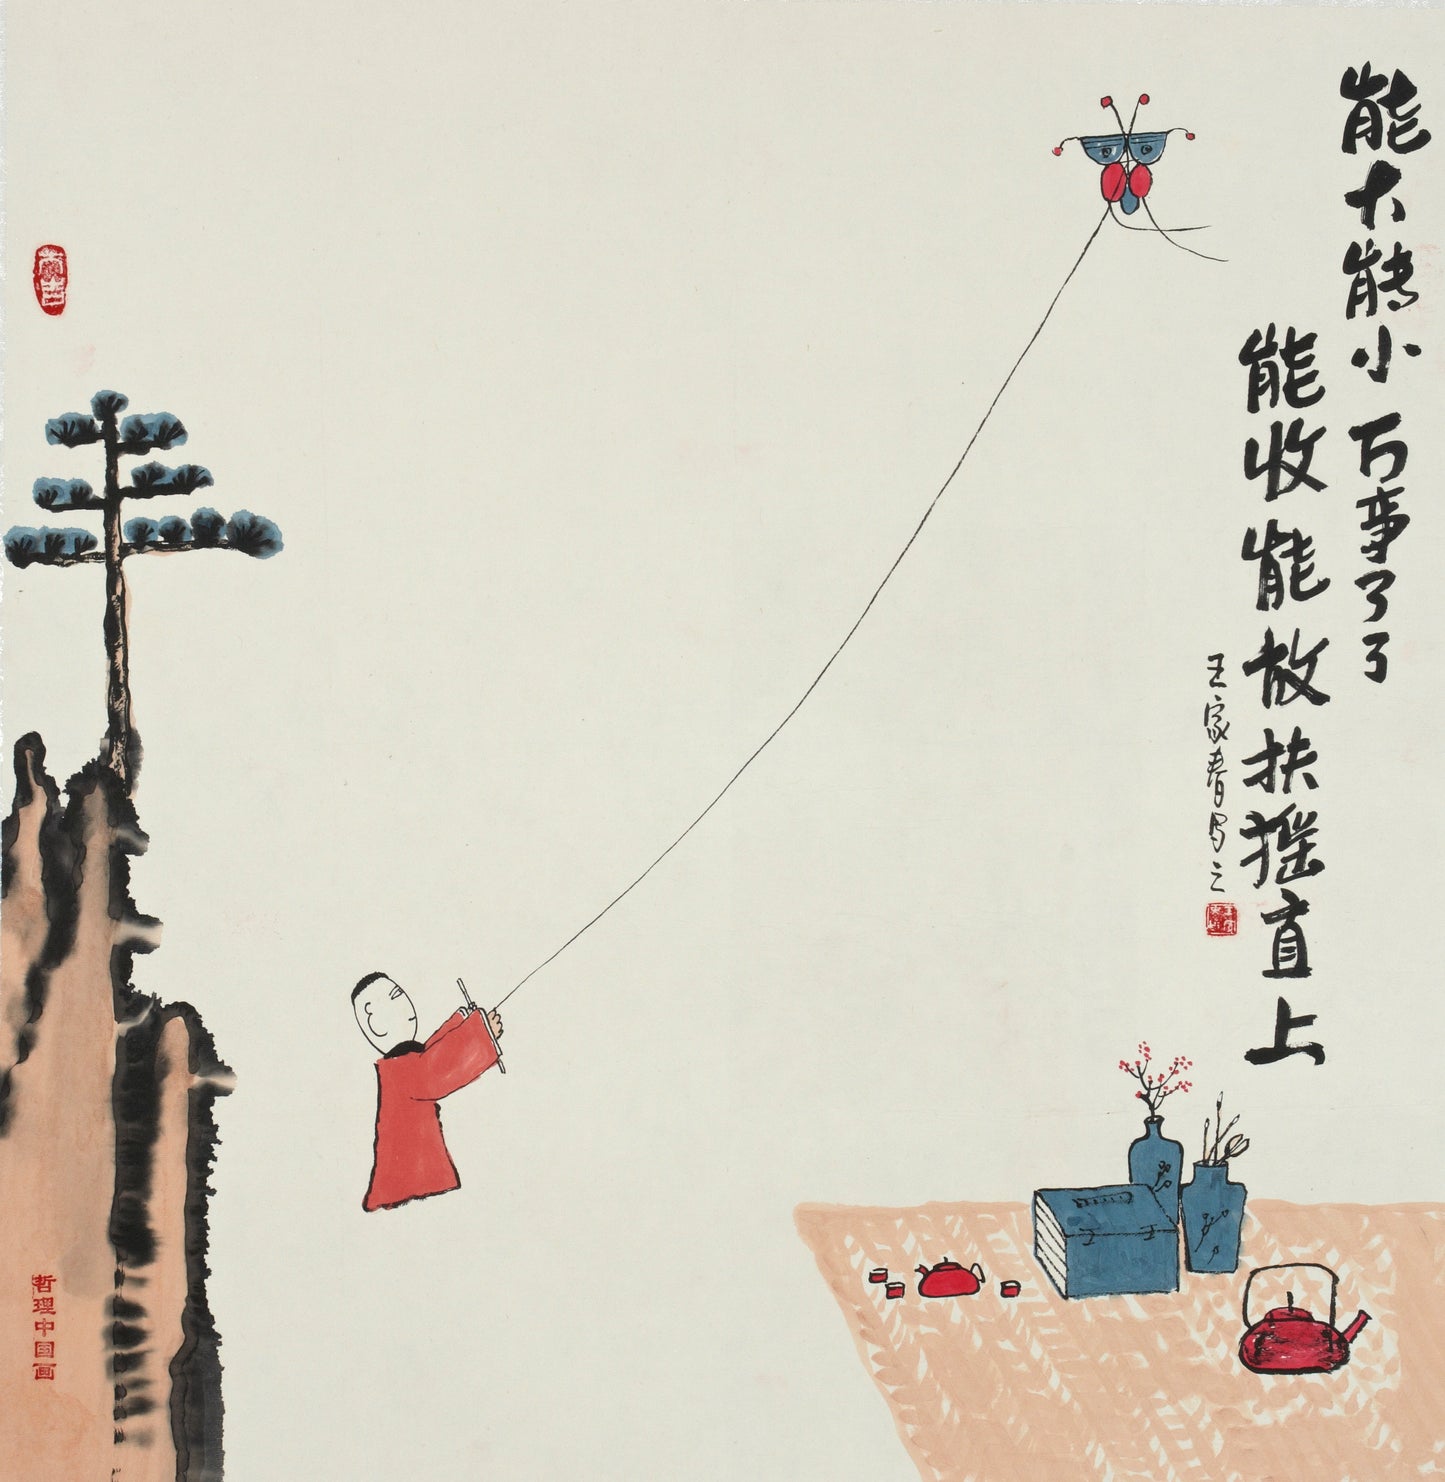 【数藏元】哲理中国画系列数字藏品王家春《能大能小万事了了》展品勿拍